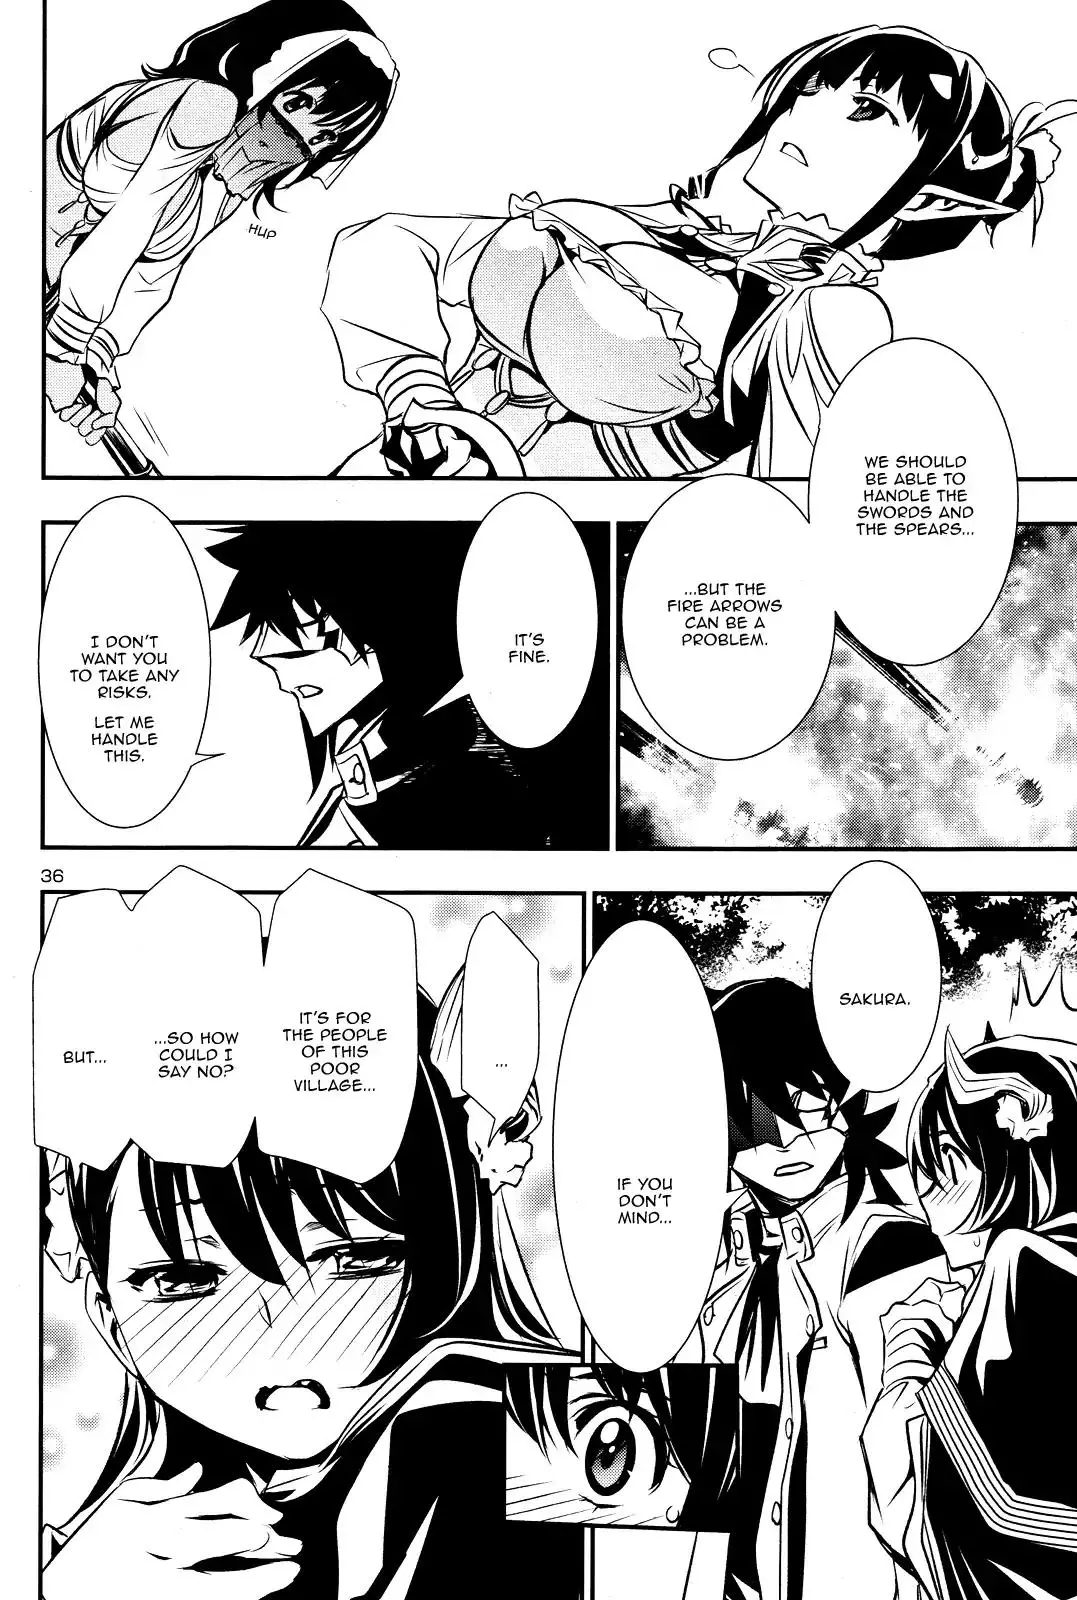 Shinju no Nectar - 14 page 35